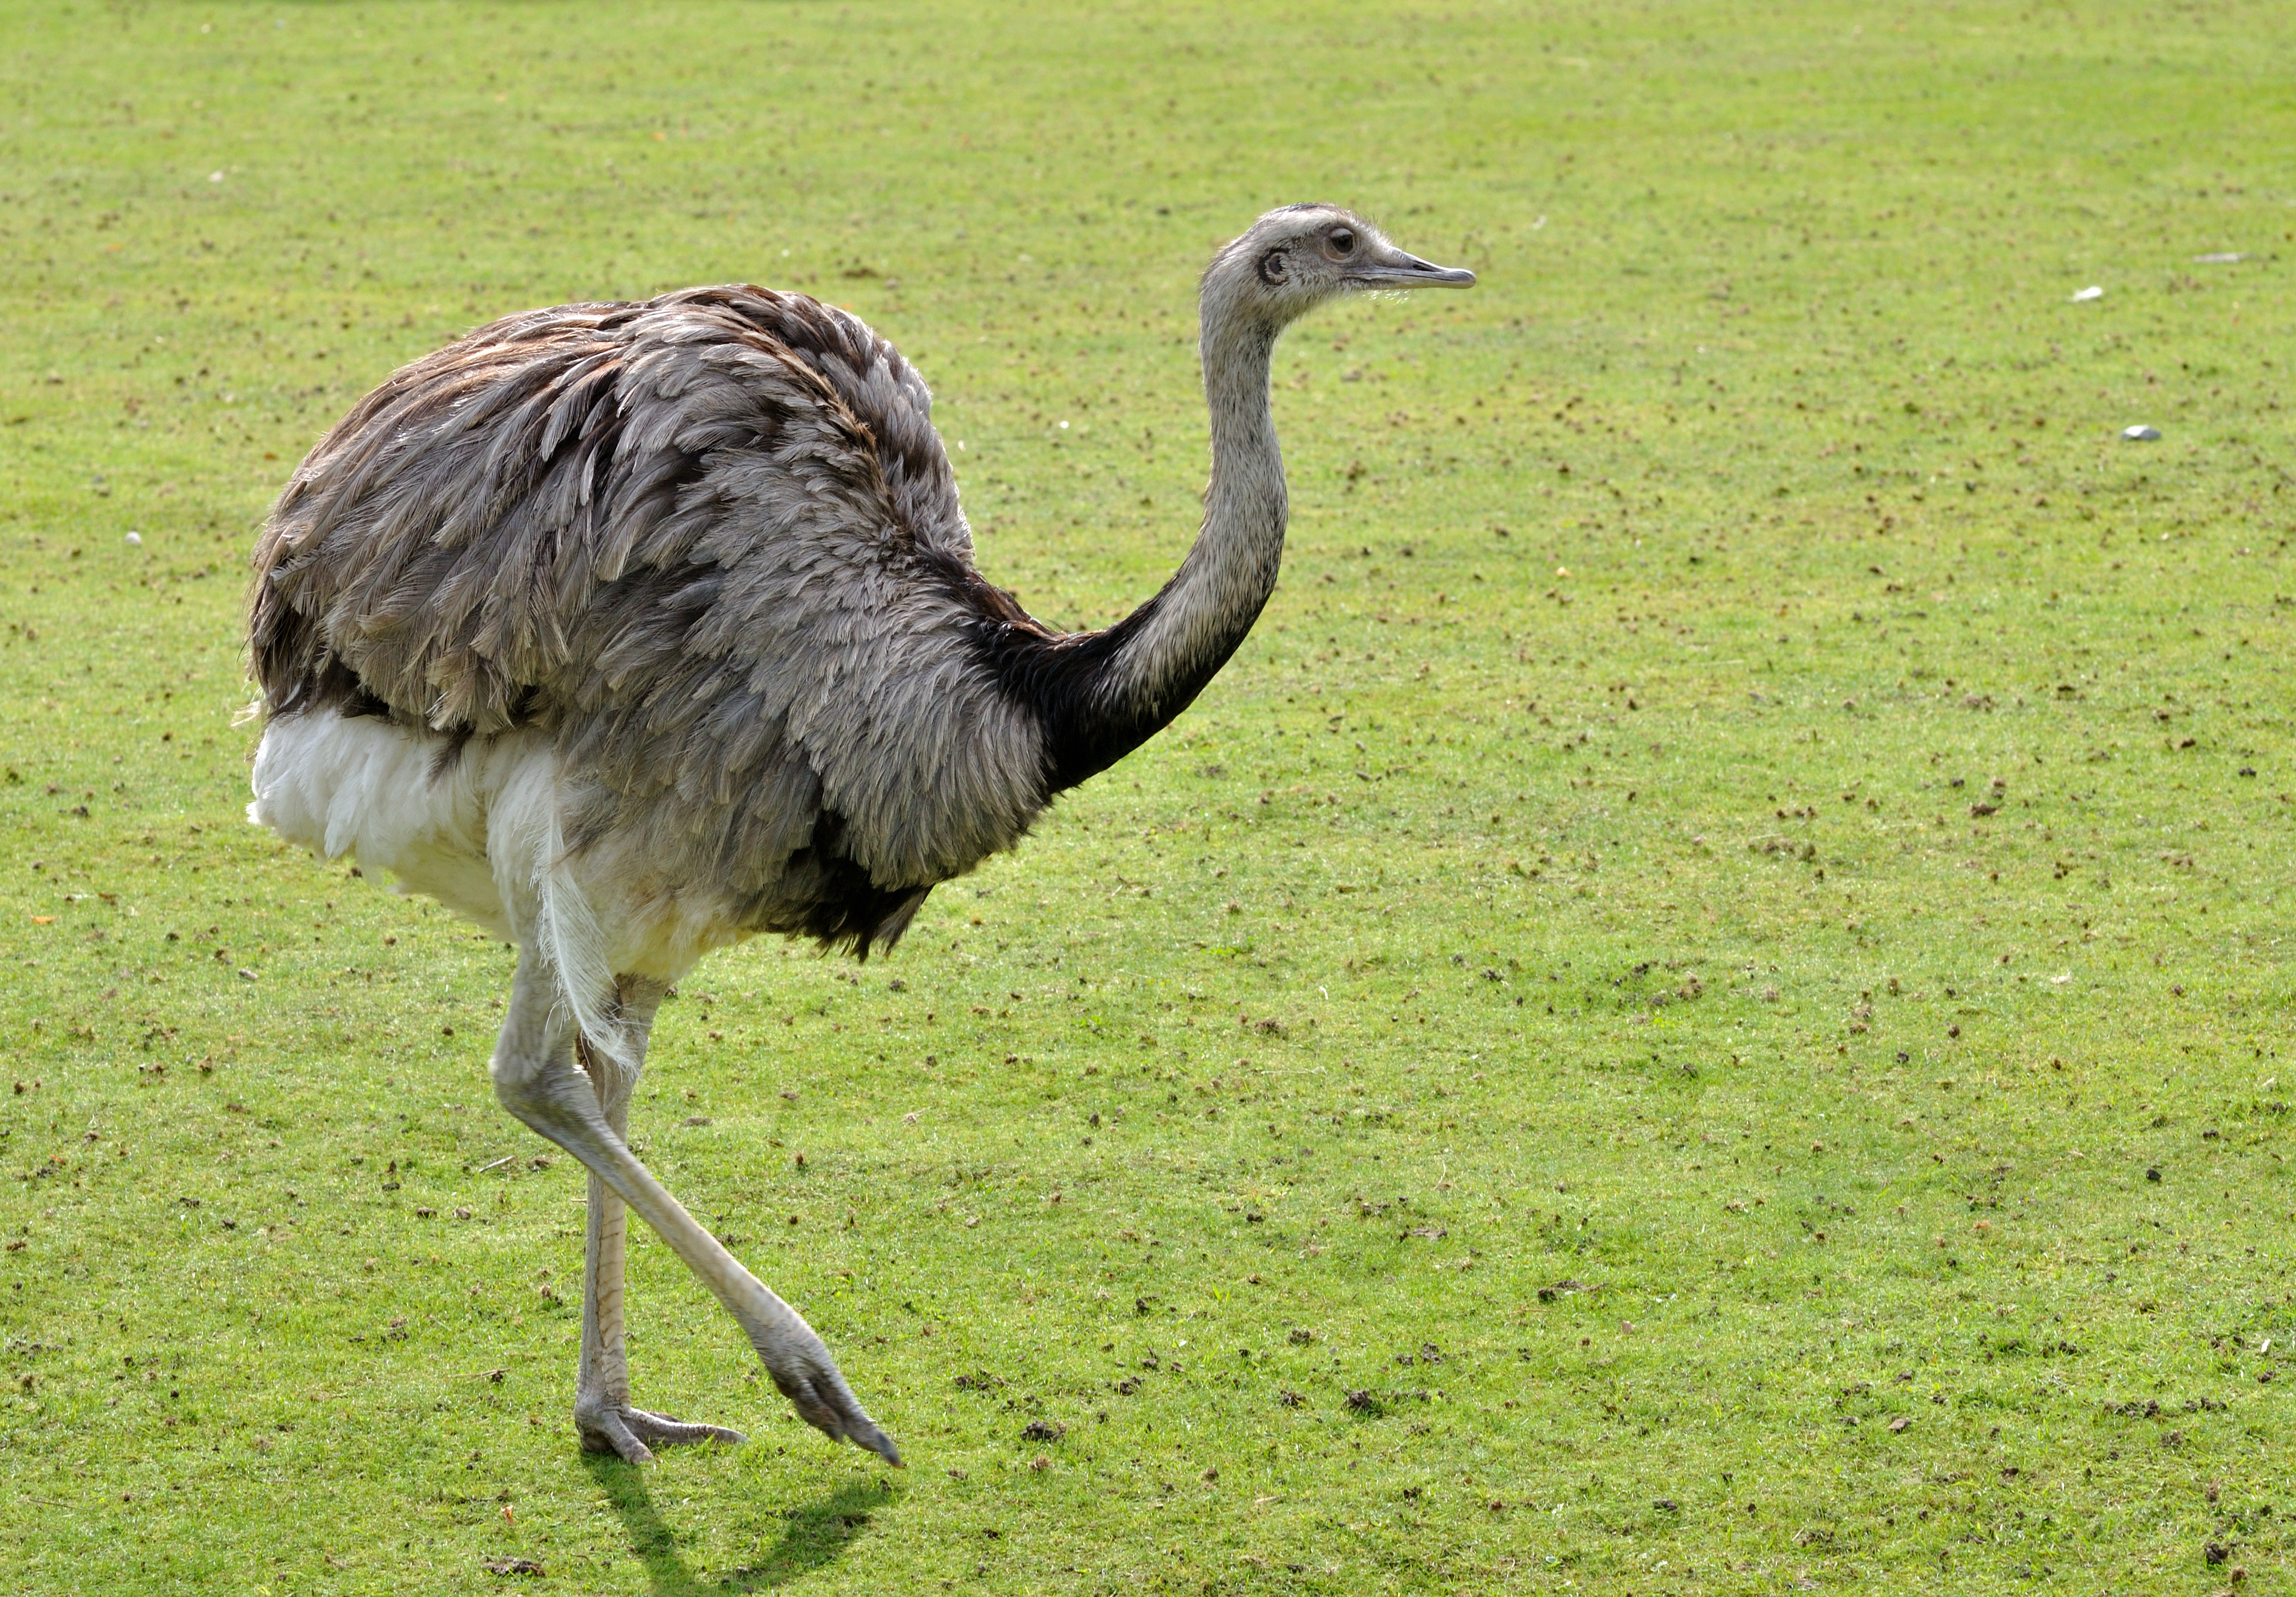 Обыкновенный страус: описание и характеристика вида